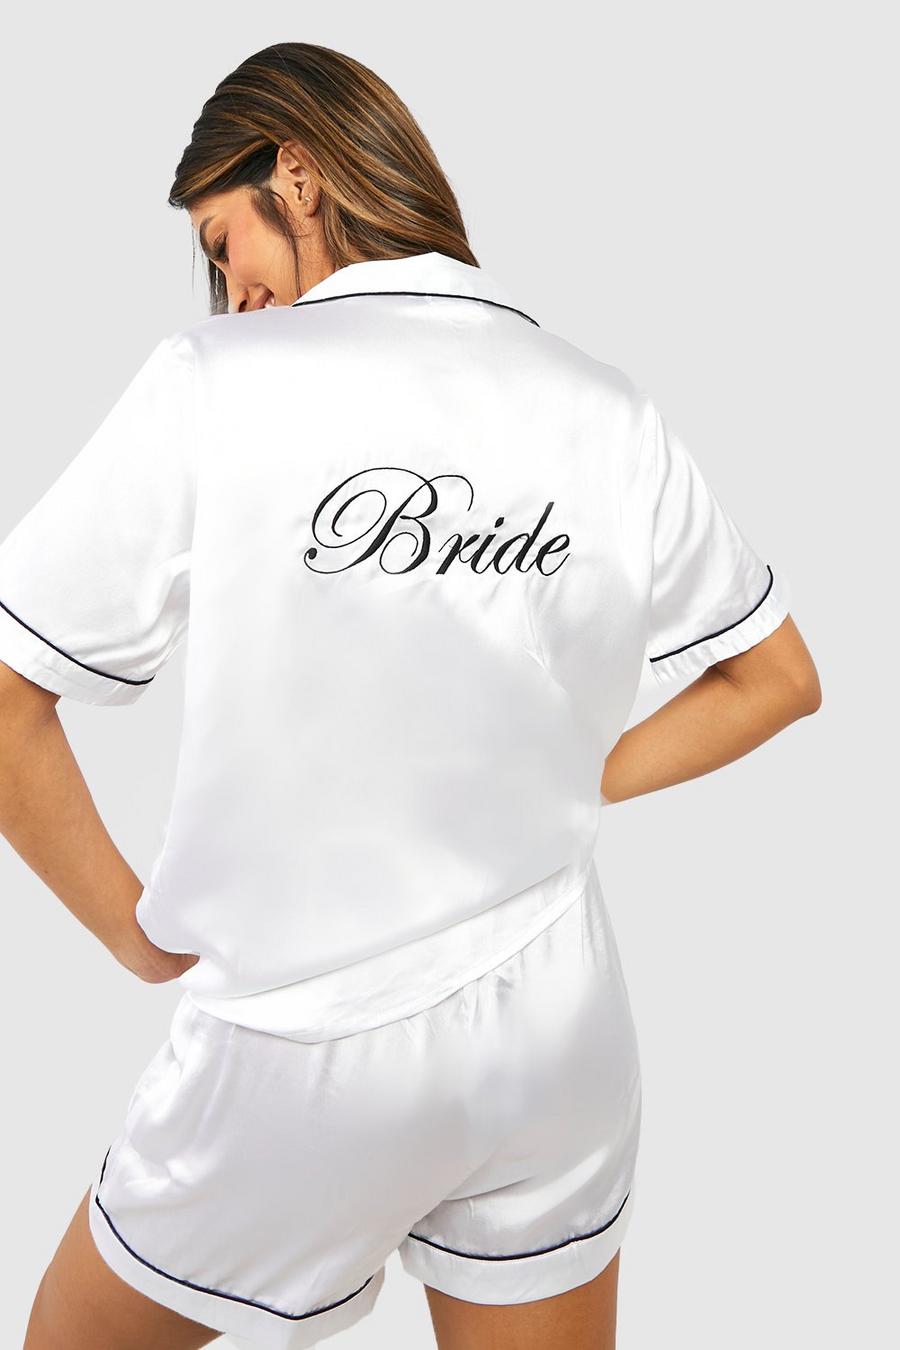 Set pigiama corto in raso con scritta Bride ricamata, White blanco